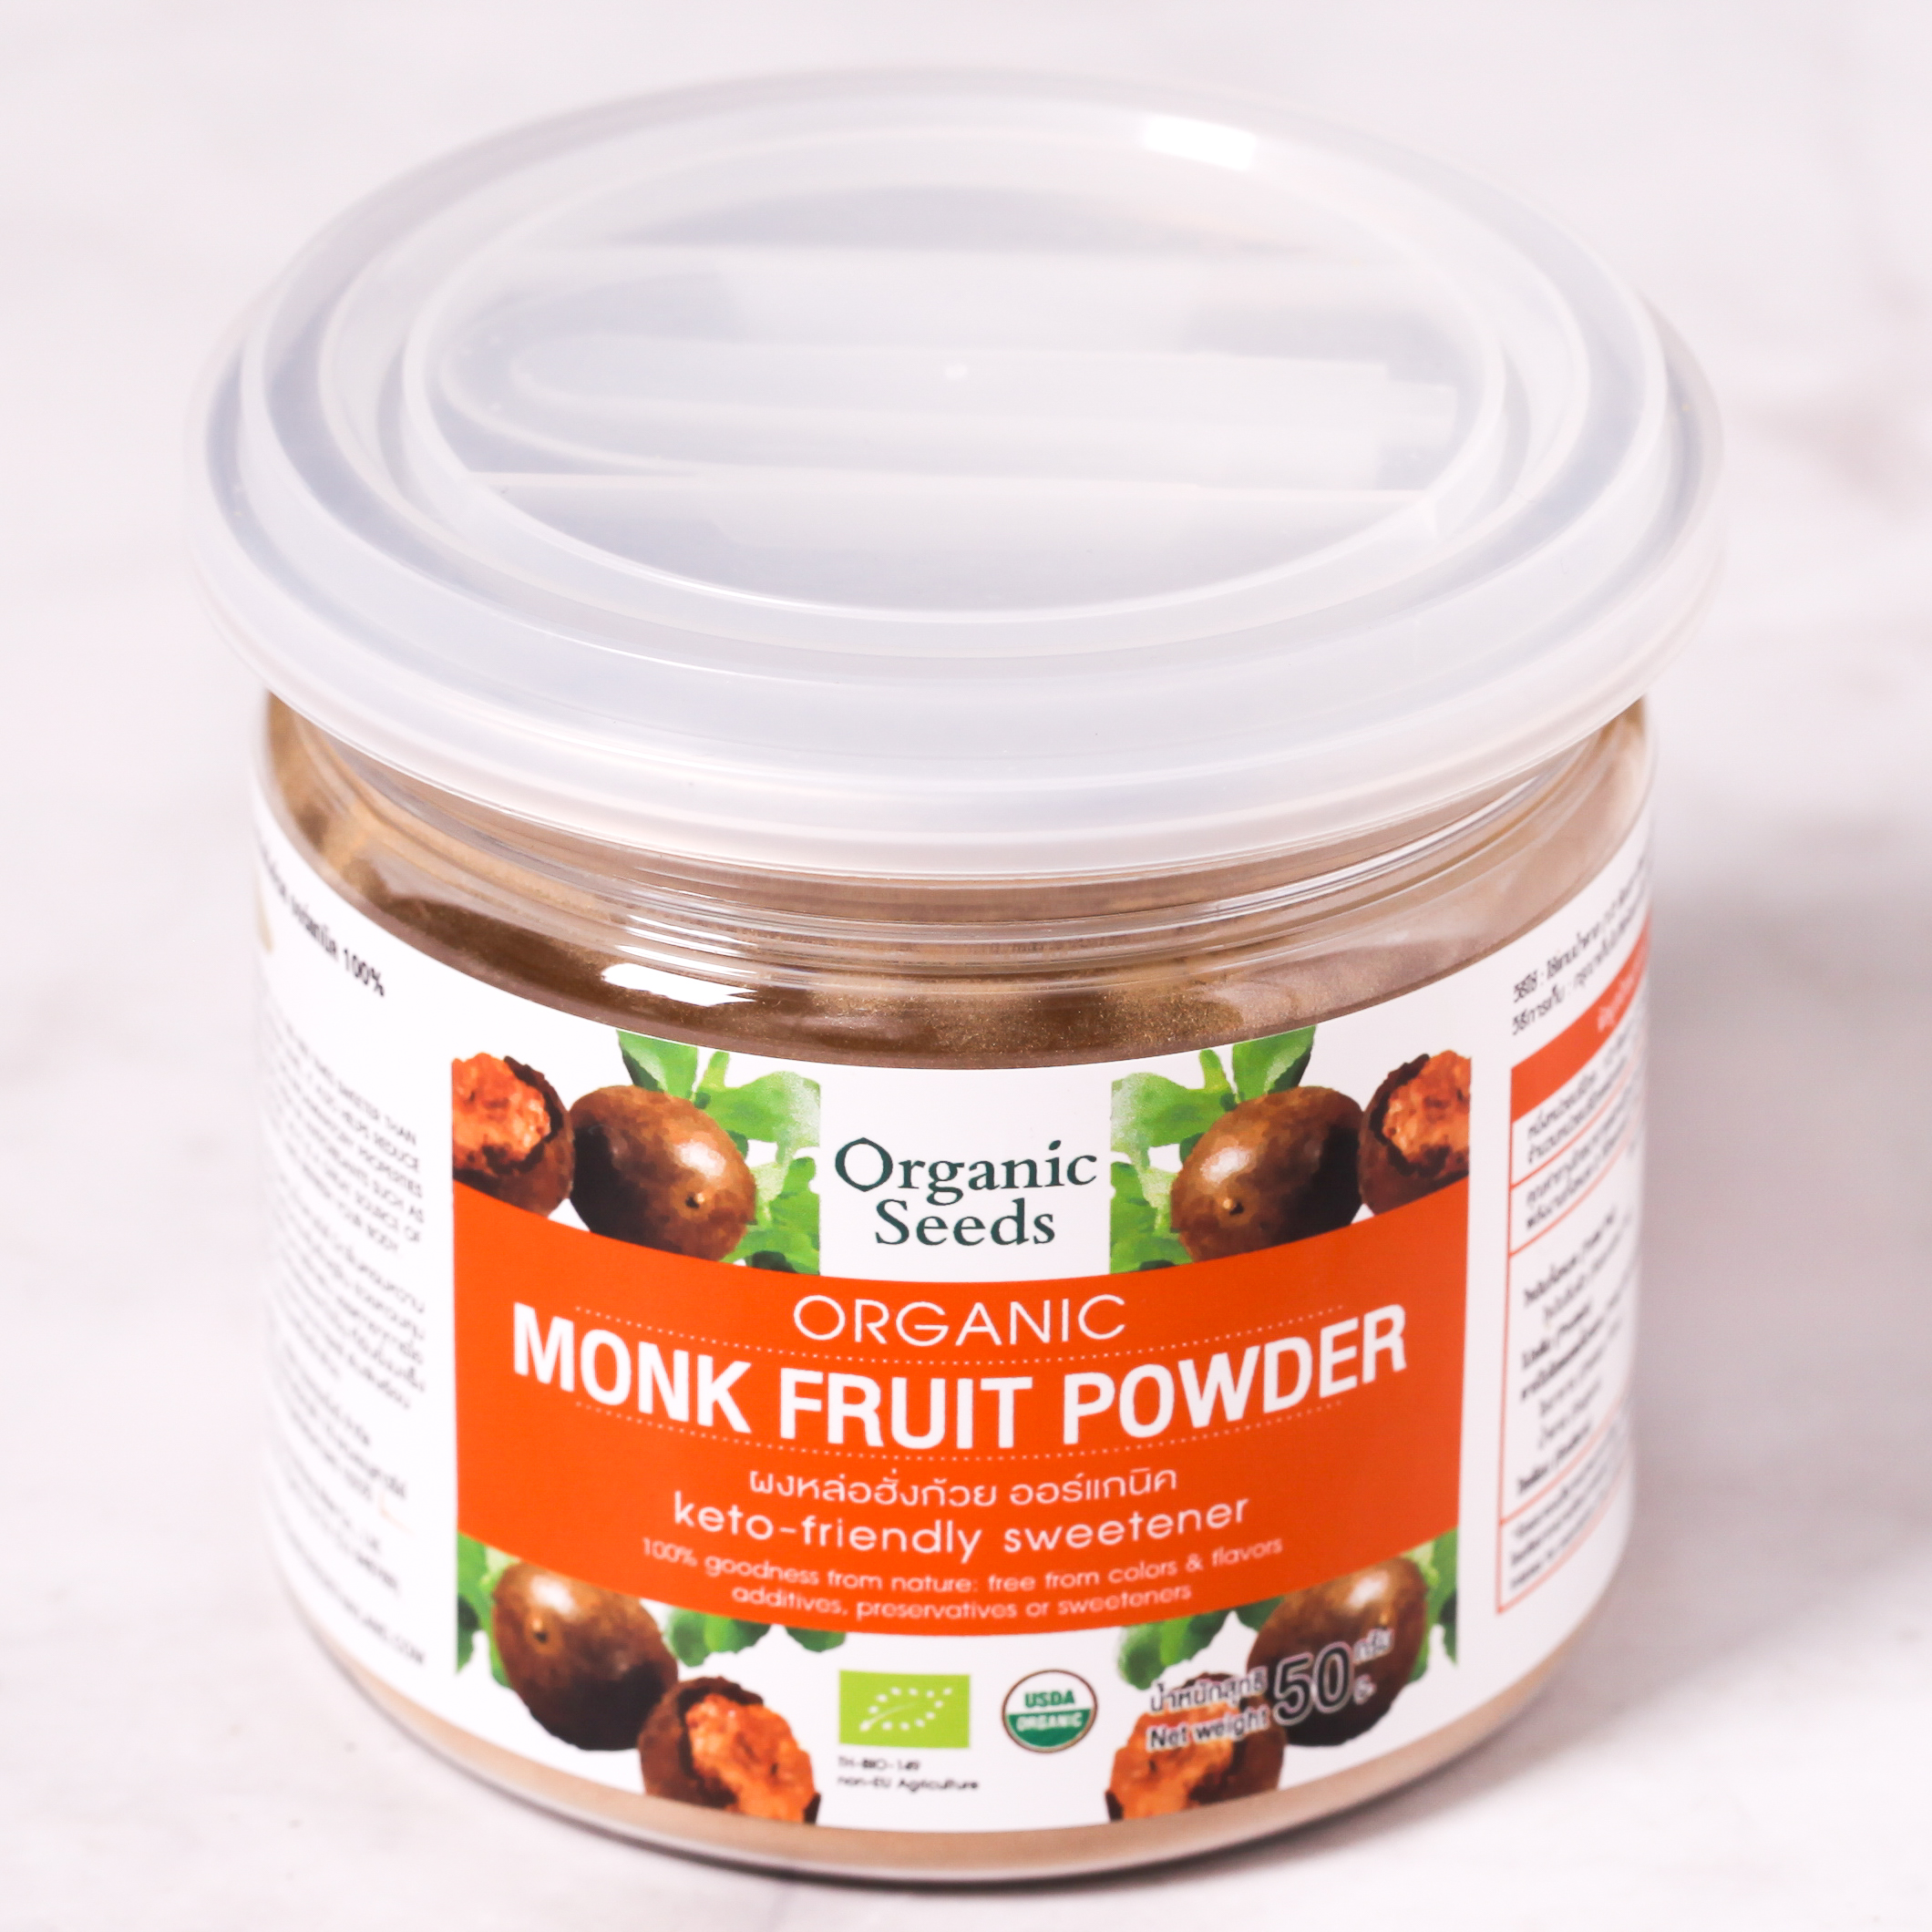 Organic Monk Fruit Powder